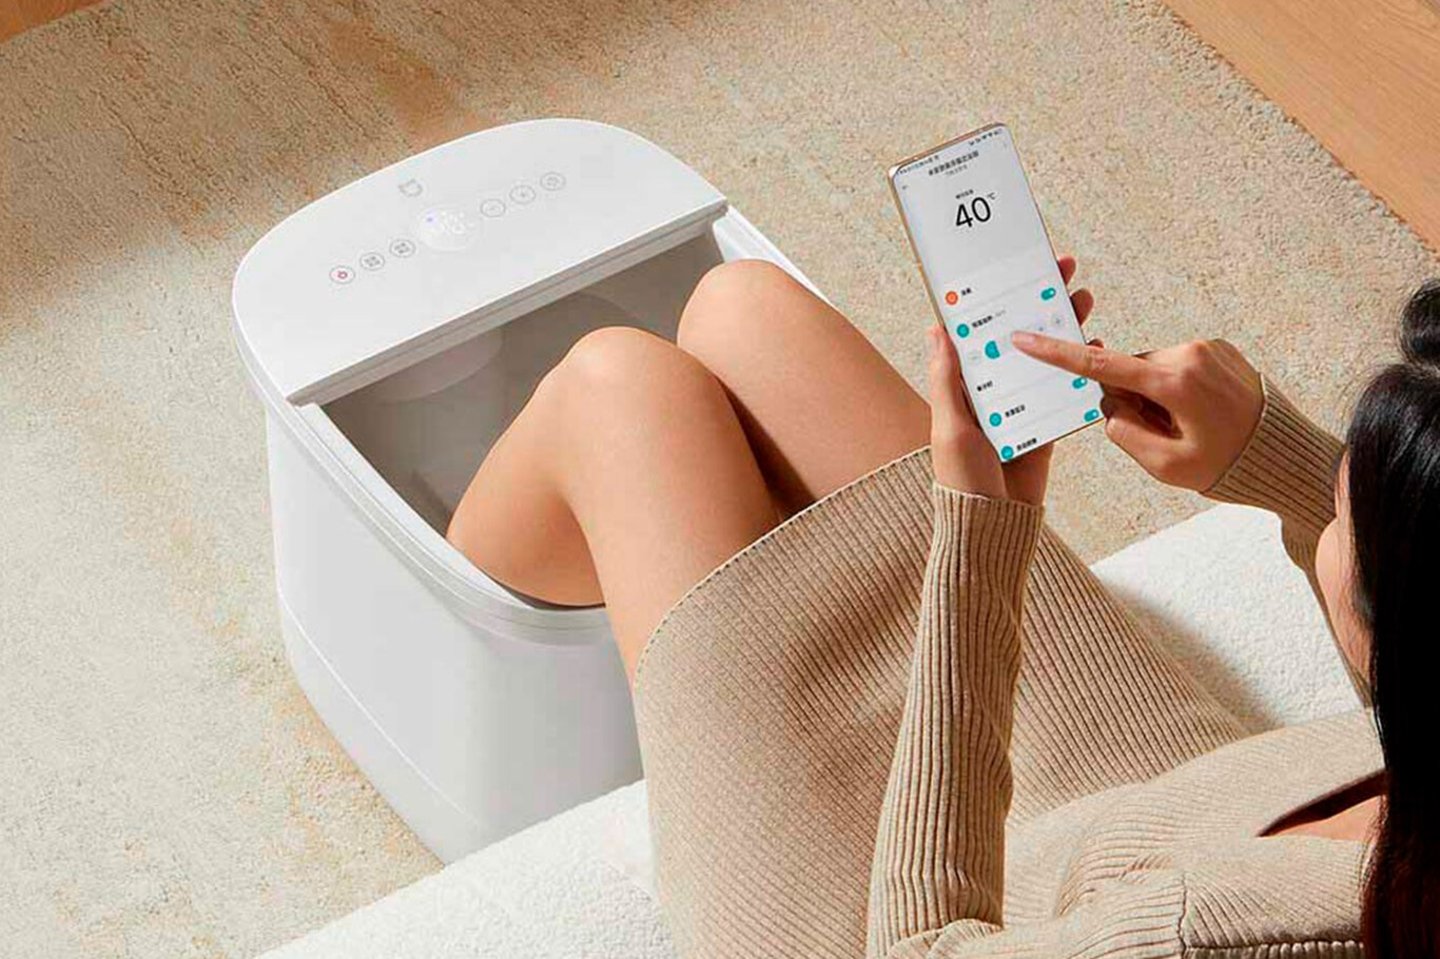 Parece un cubo de fregona, pero en realidad es el nuevo dispositivo inteligente de higiene personal de Xiaomi